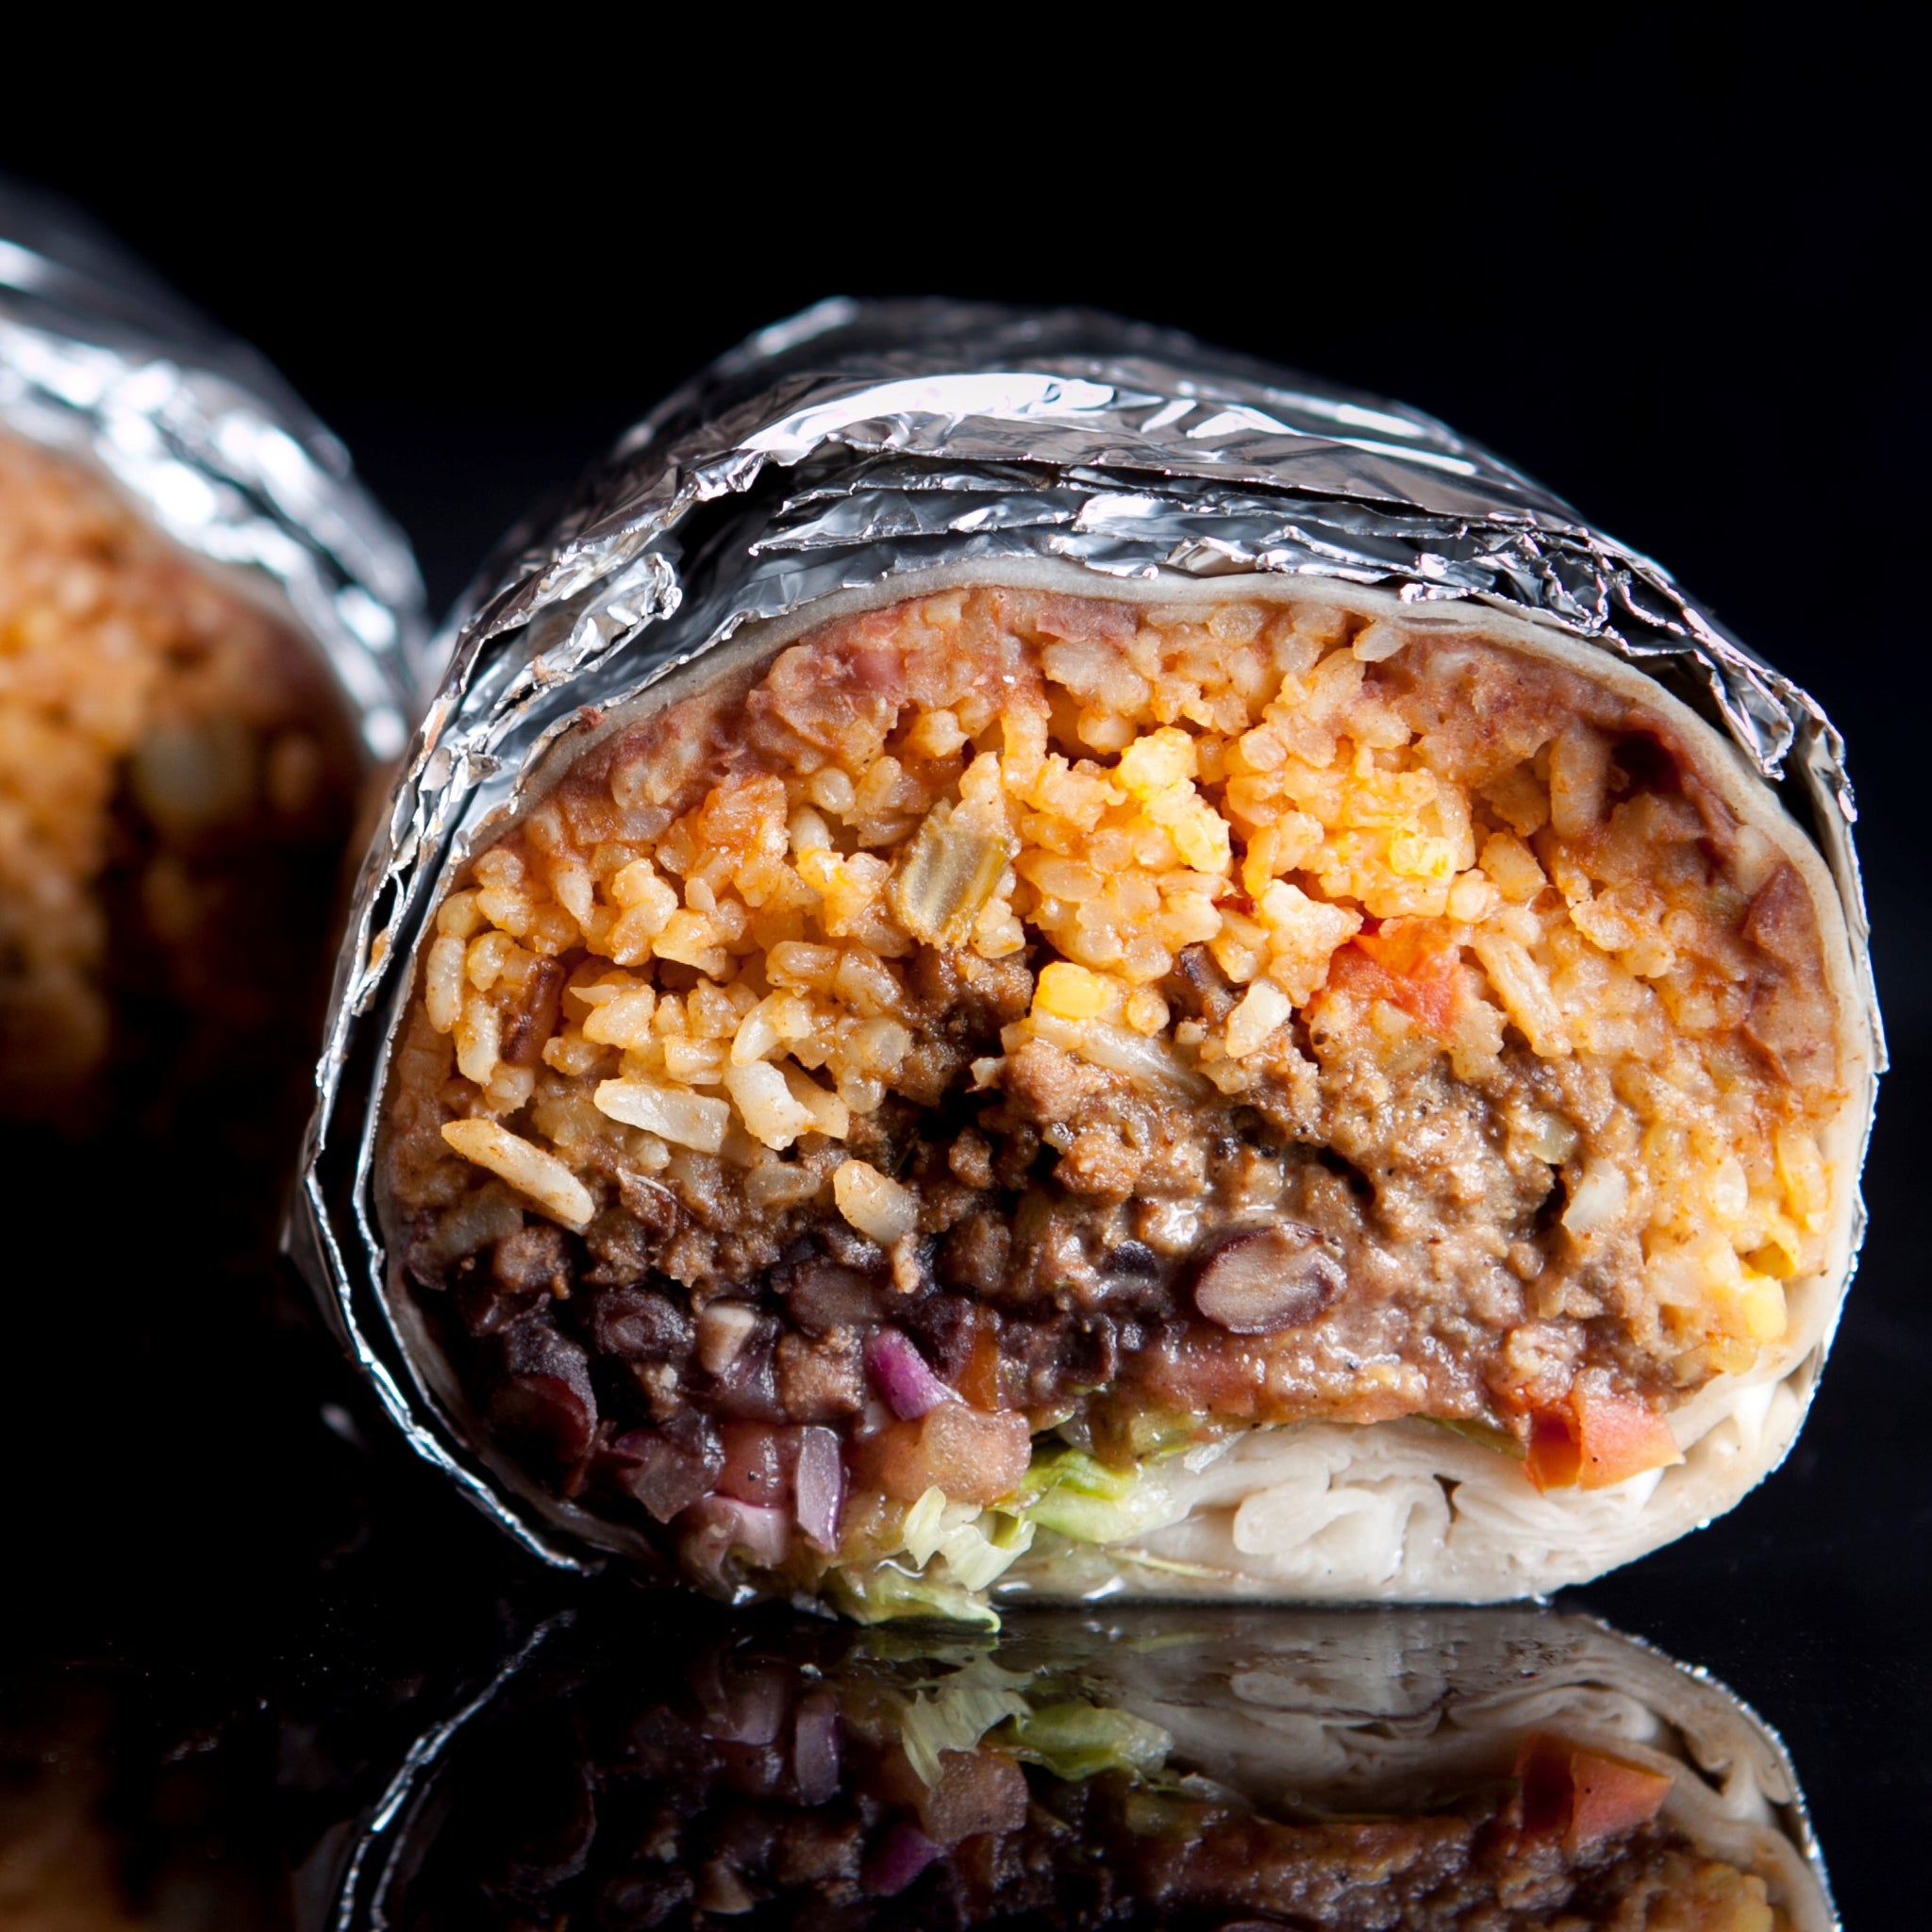 Burrito – Chihuahua Mexican Grill